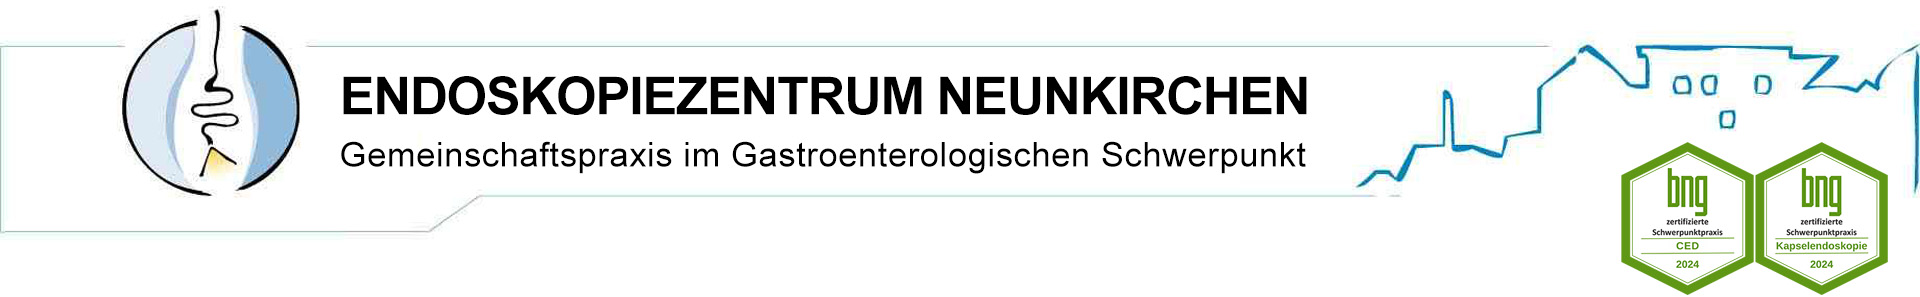 Endoskopiezentrum Neunkirchen; Gemeinschaftspraxis im Gastroenterologischen Schwerpunkt